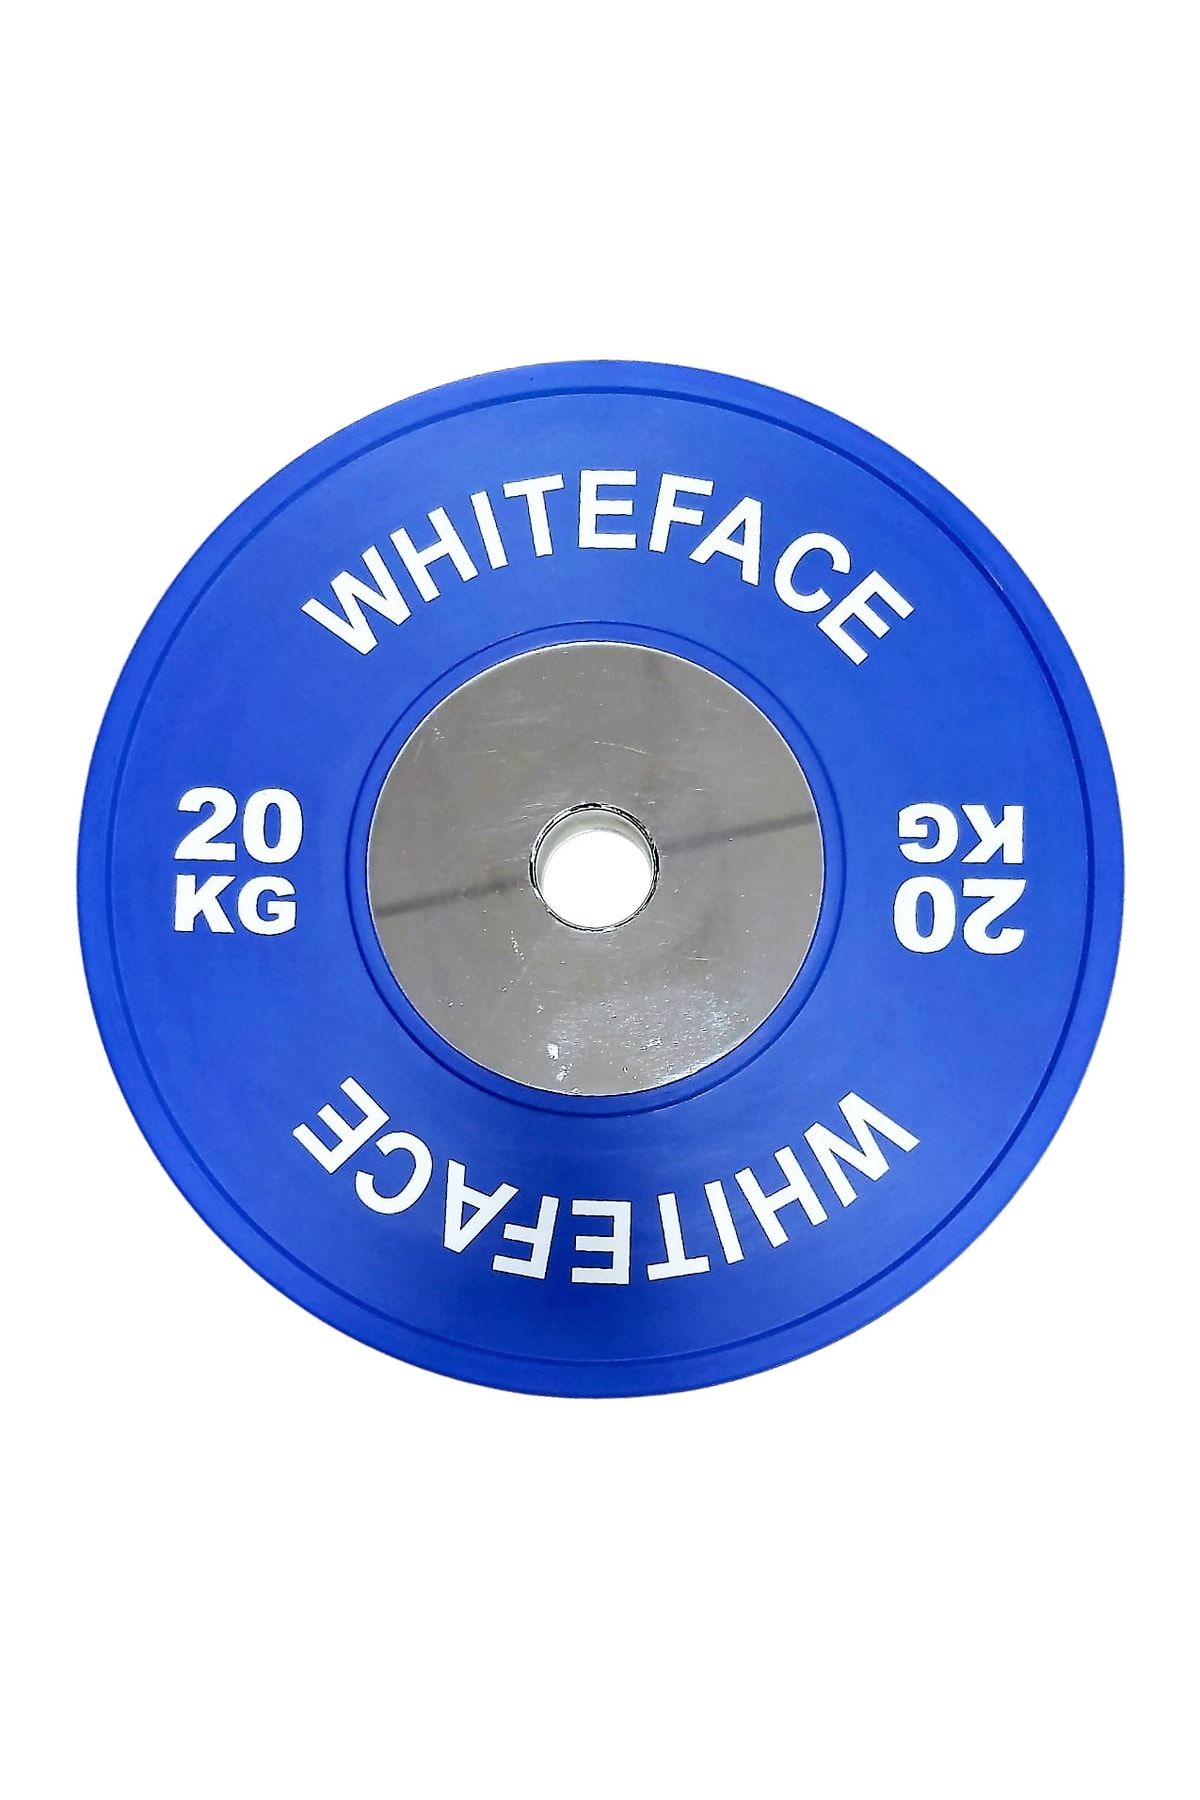 whiteface Olimpik Halter Plakası (disk) 20kg (mavi)